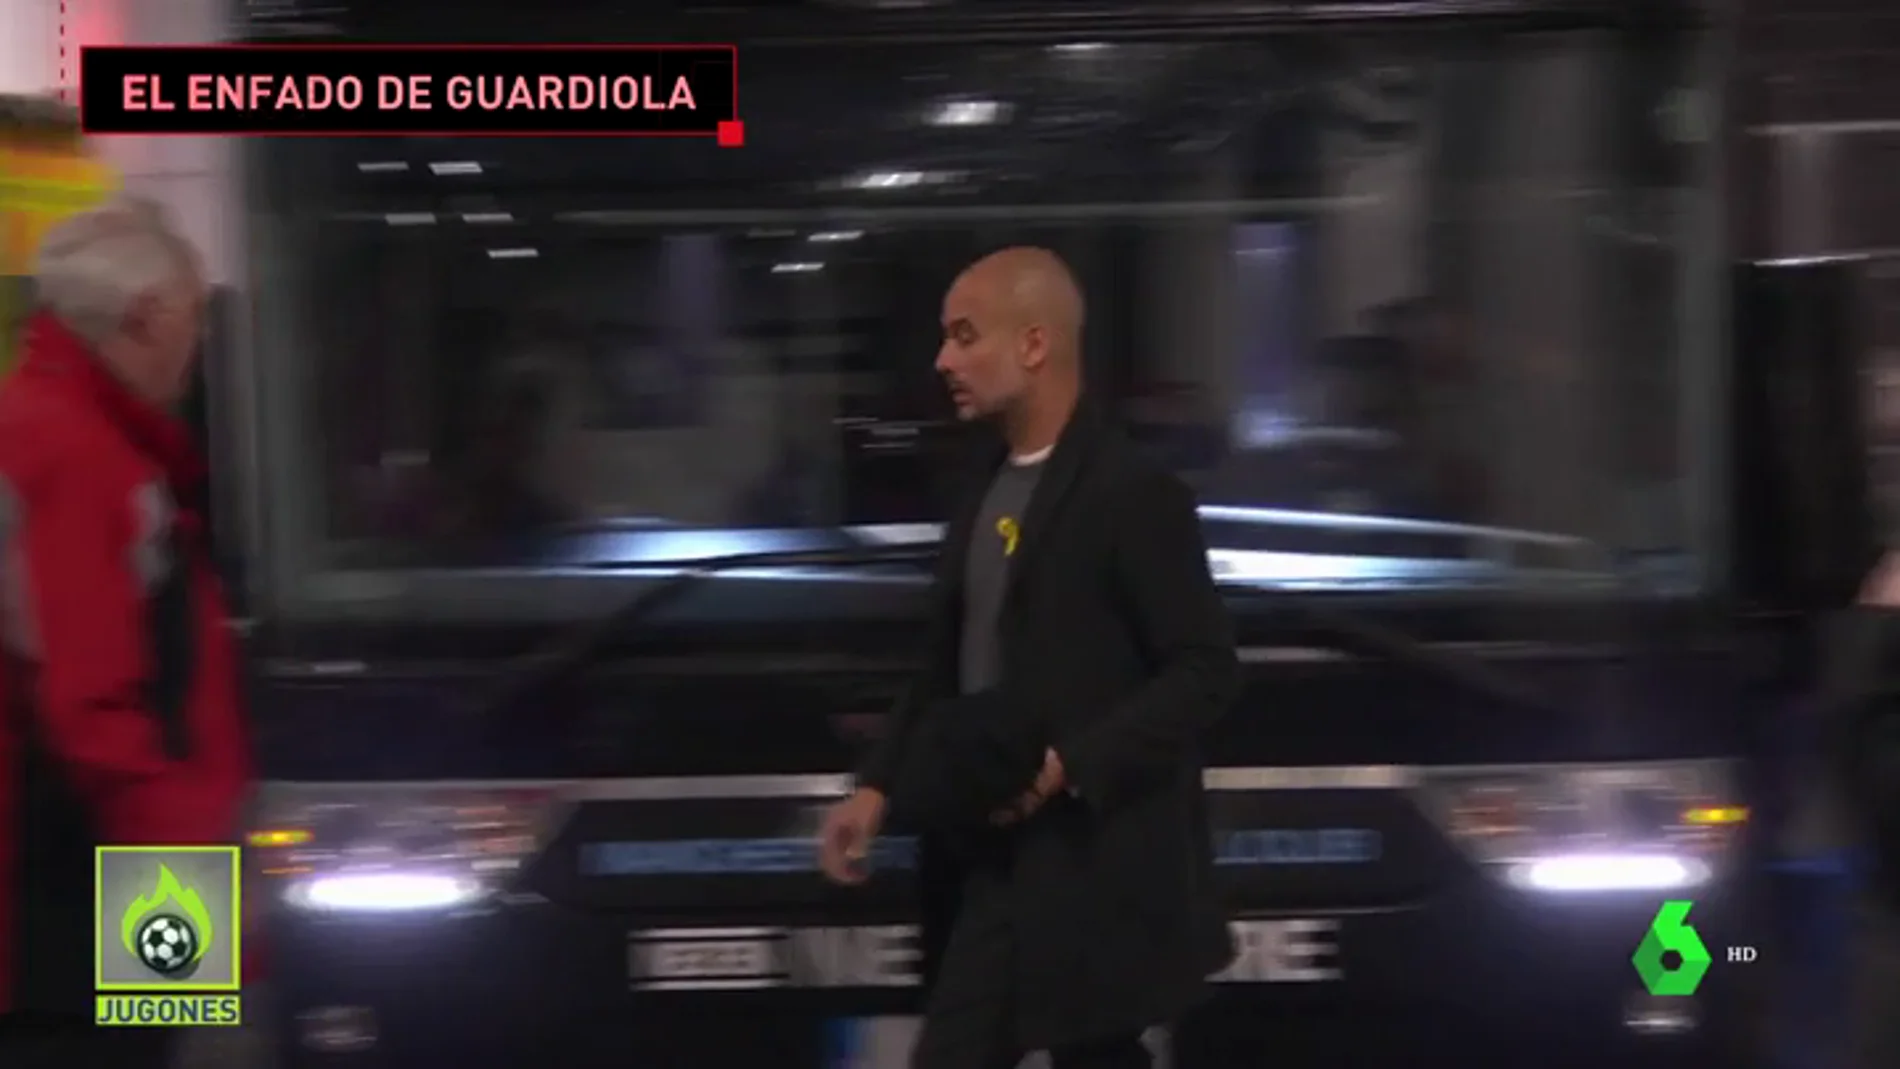 El enfado de Guardiola con la Policía tras el ataque al autobús del City: "Gracias por protegernos... vergüenza"